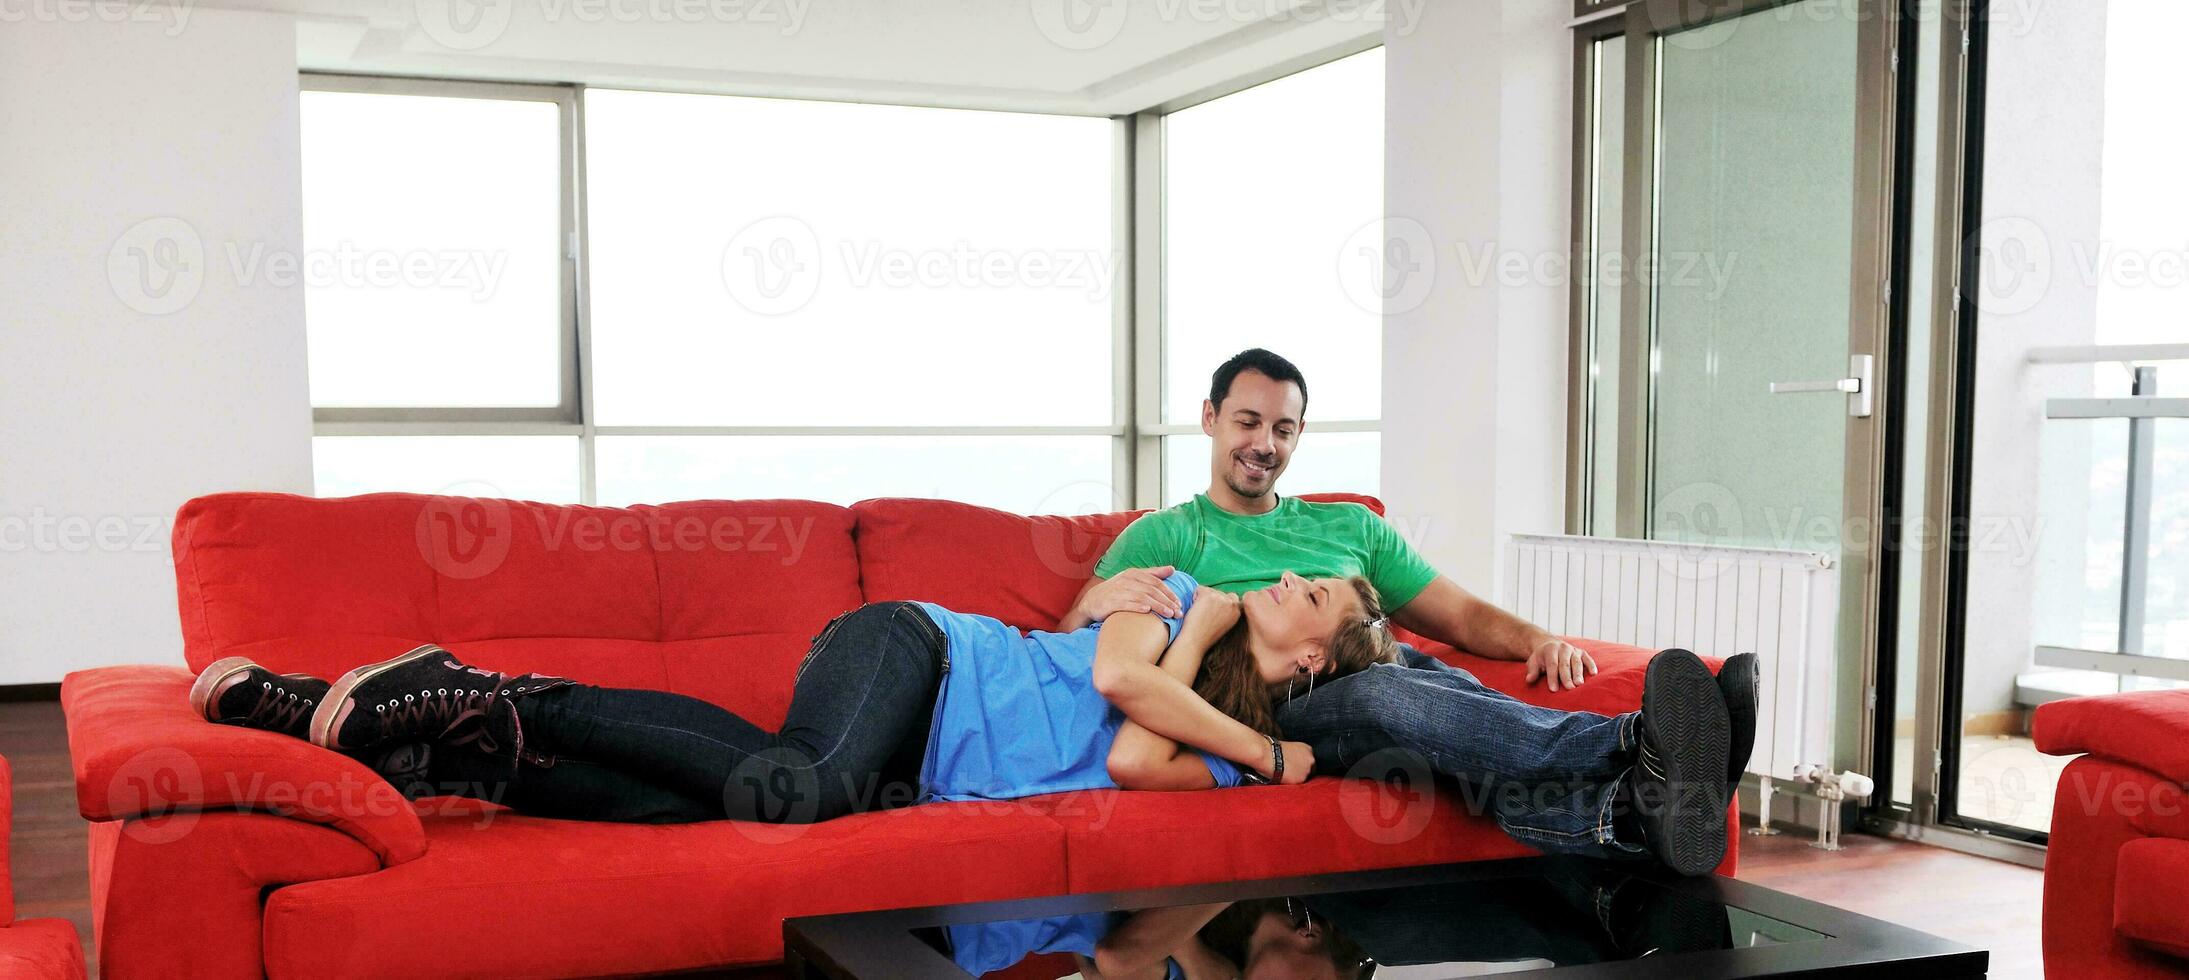 gelukkig paar kom tot rust Aan rood sofa foto